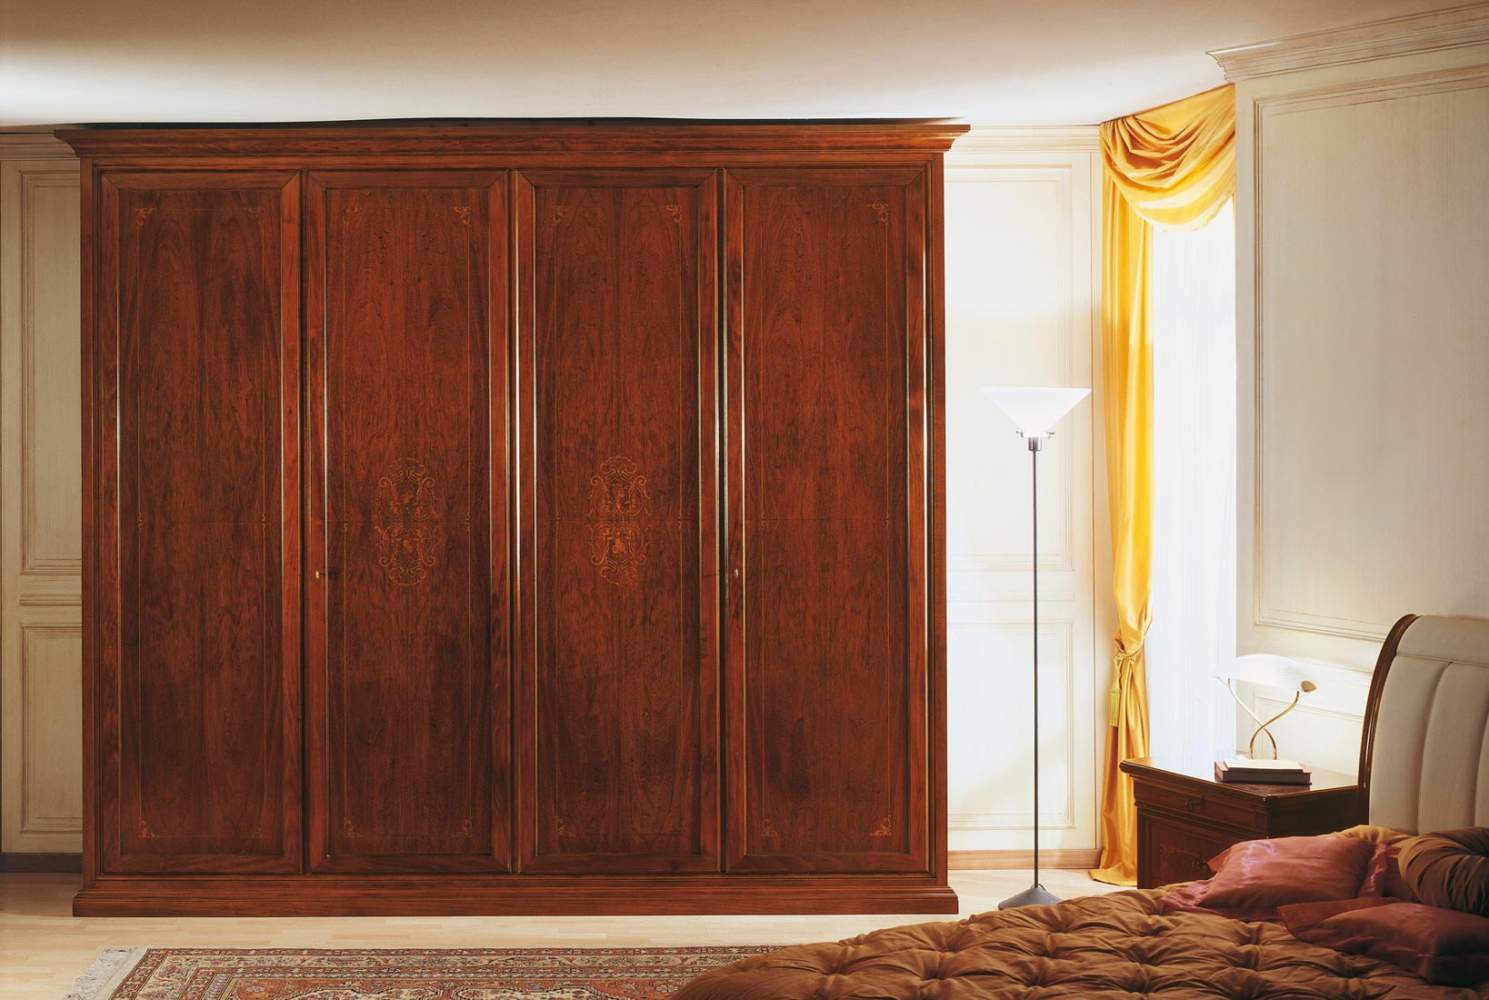 Chambre à coucher XIXe siècle français, armoire marquetée avec deux compartiments